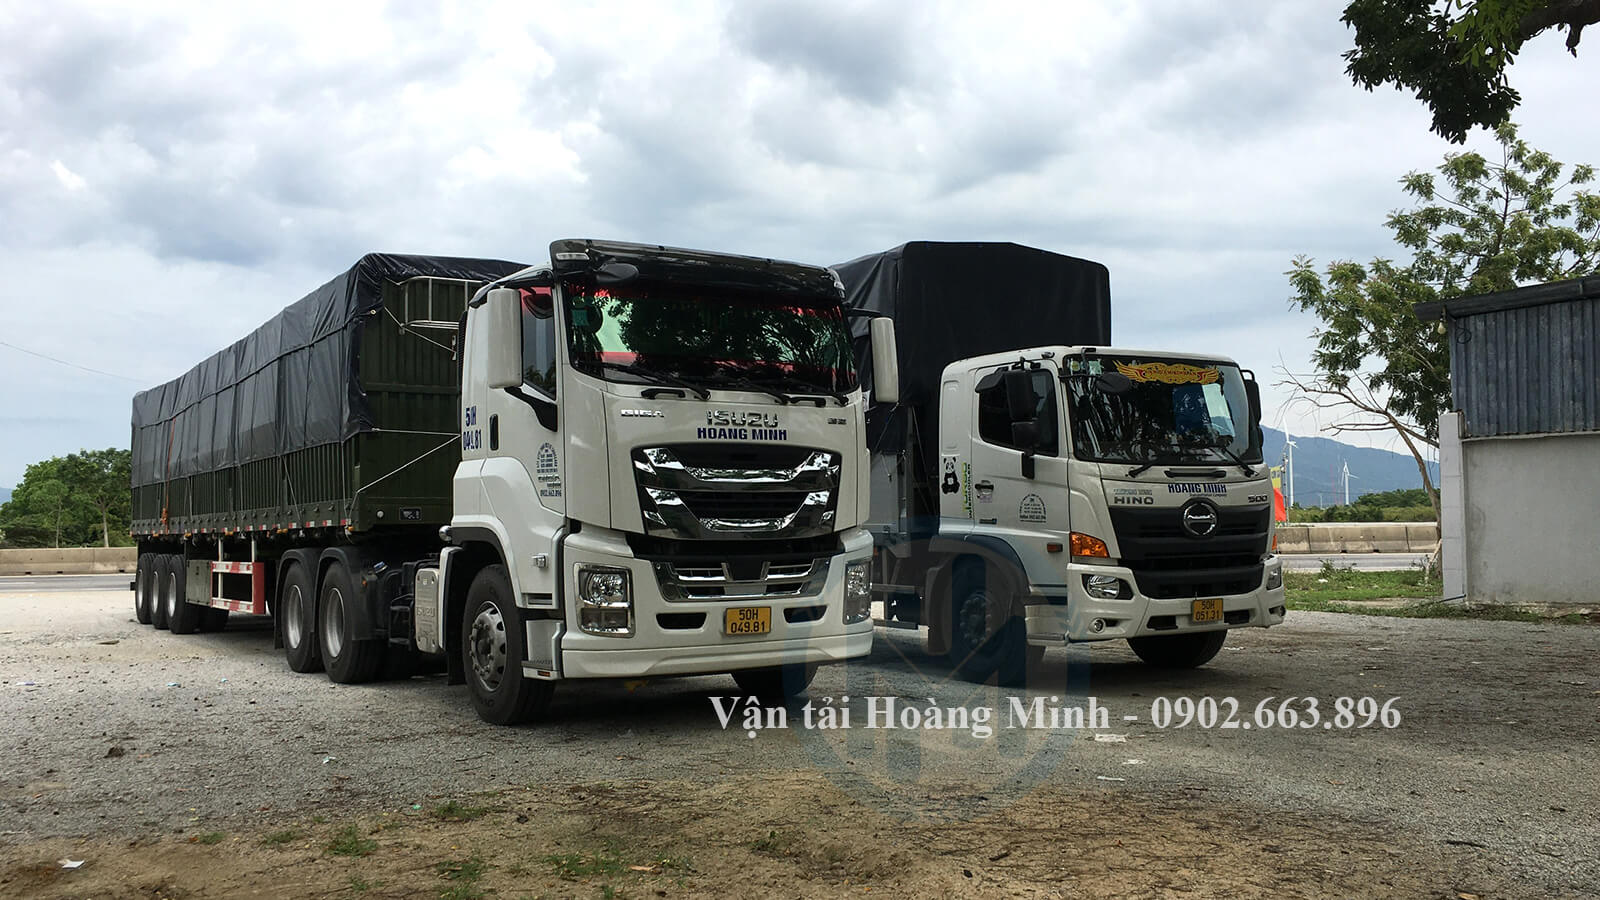 Vận tải Hoàng Minh có cho thuê xe tải chở hàng Quận 4 theo tháng không